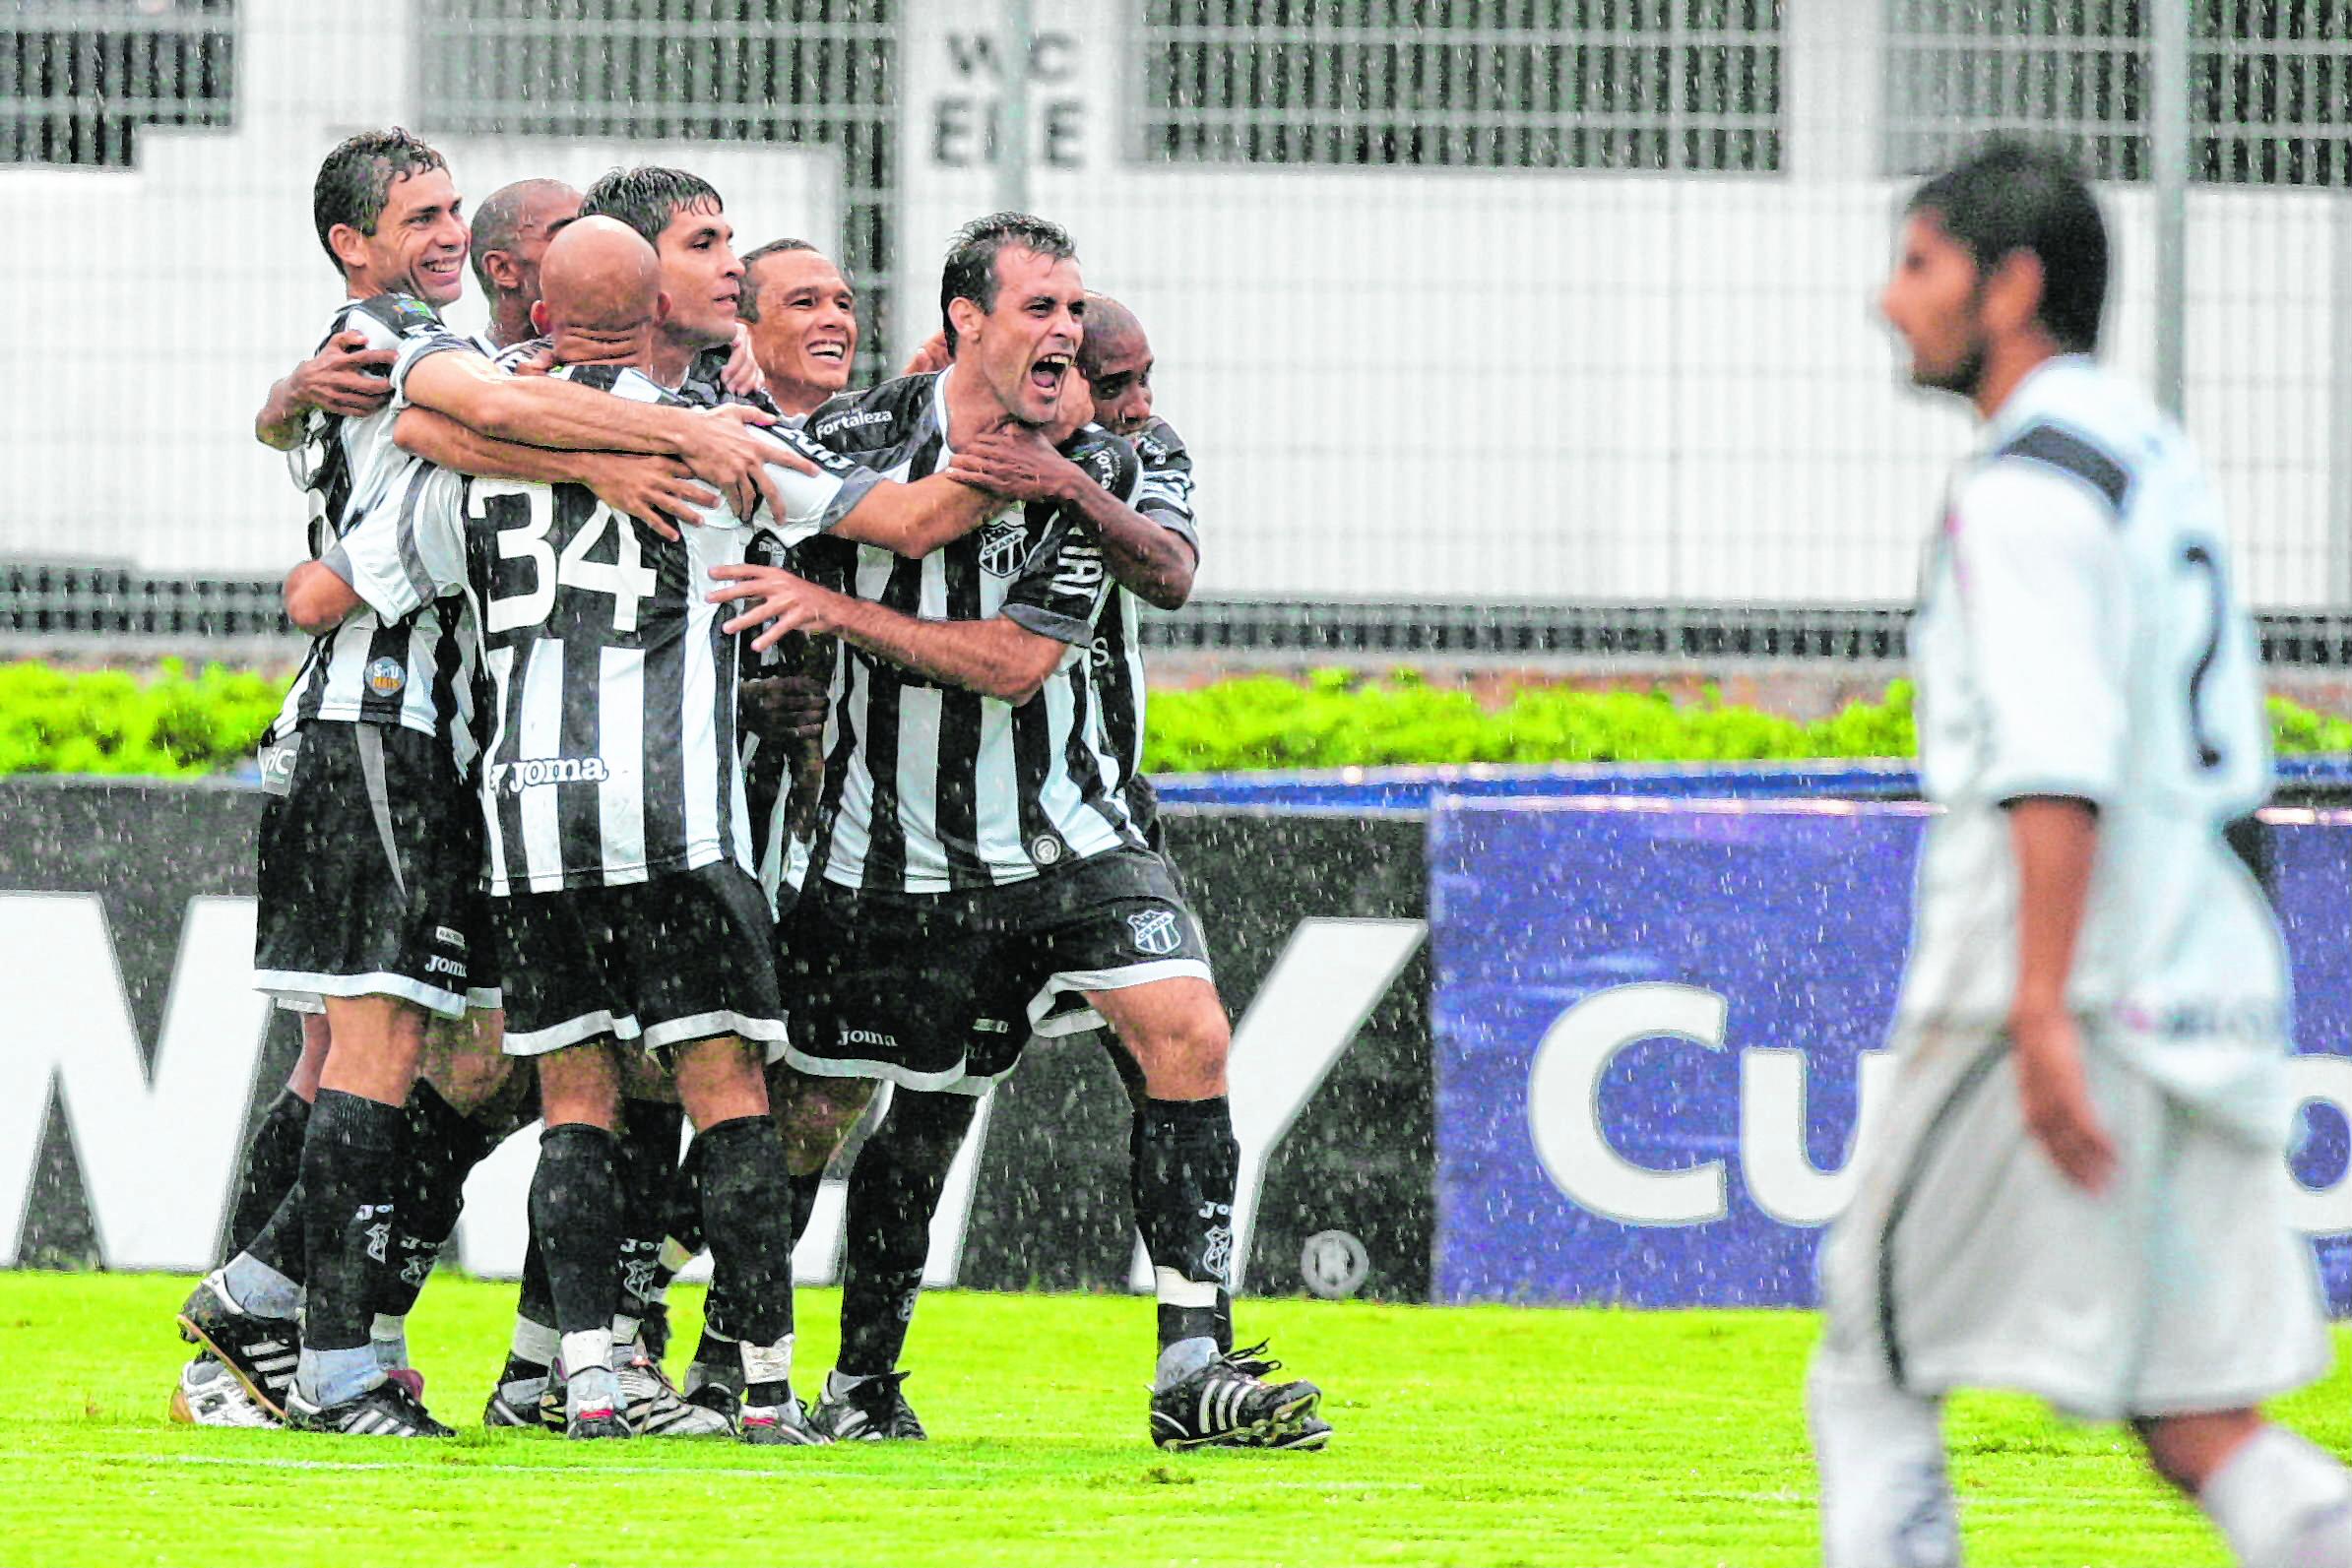 Zagueiro Fabrício, autor de um dos gols, comemora com os companheiros o acesso que estava próximo. Foto: Kiko Silva